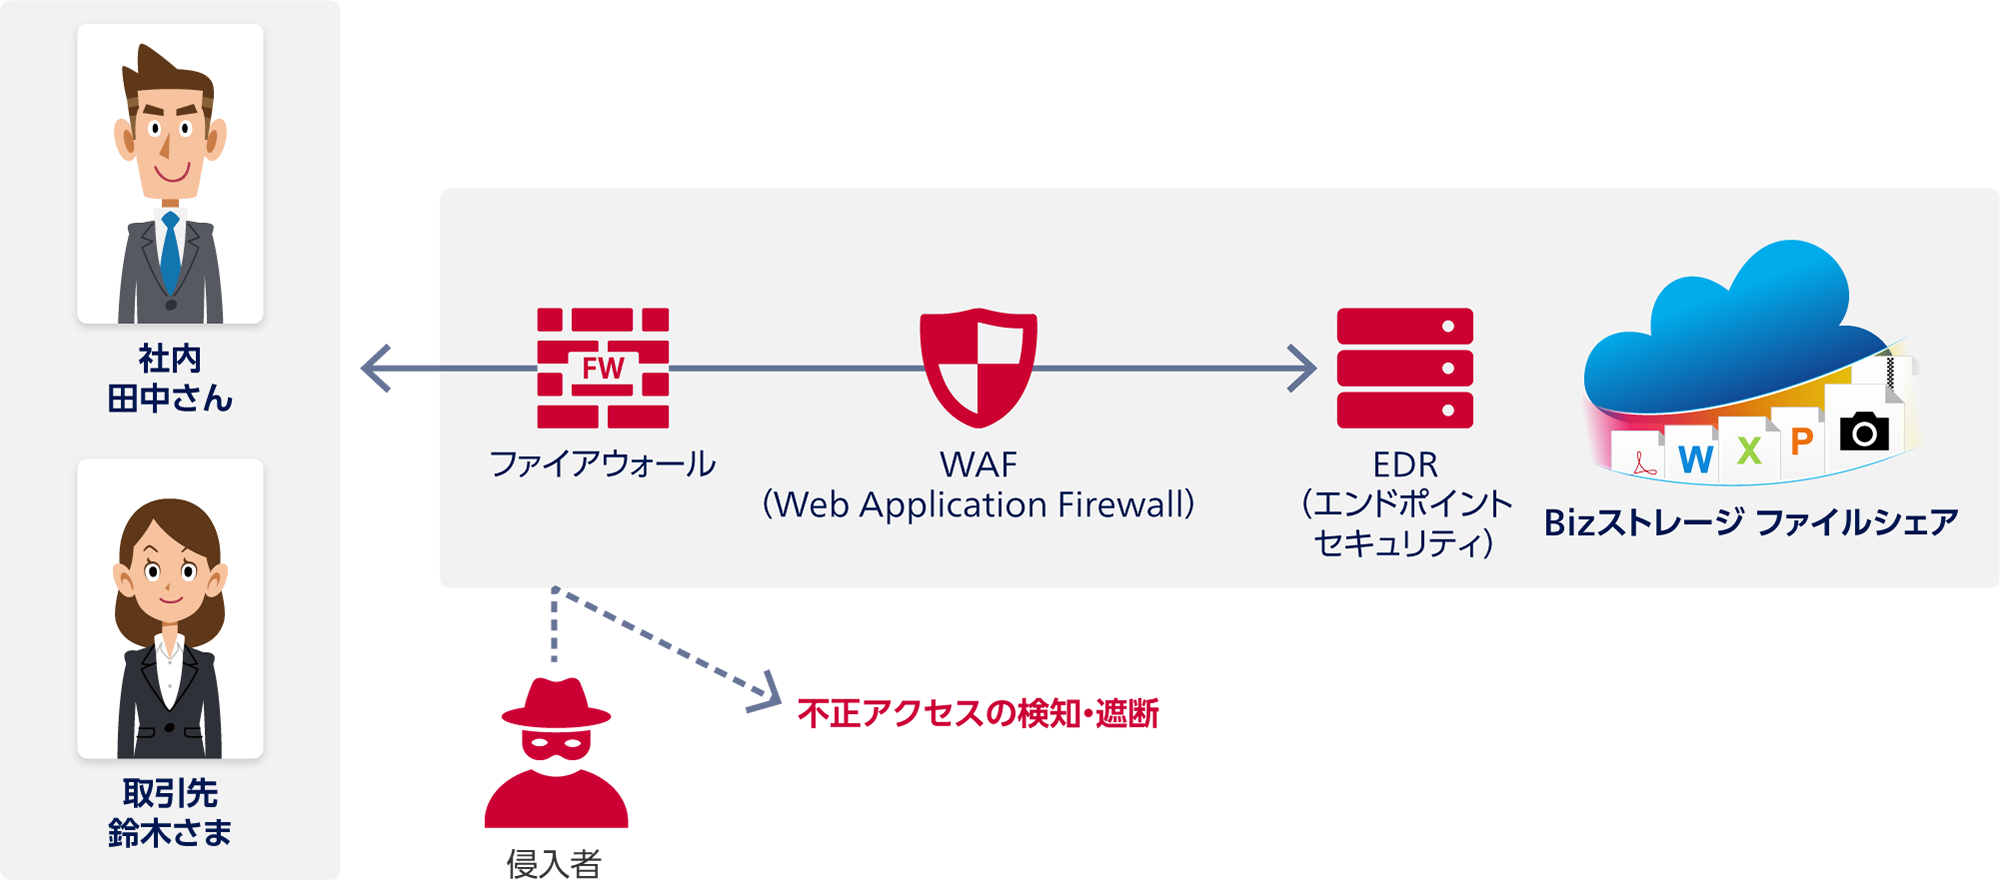 社内 田中さん・取引先 鈴木さまとBizストレージ ファイルシェアの間：ファイアウォール、WAF（Web Application Firewall）、EDR（エンドポイントセキュリティ）。侵入者：不正アクセスの検知・遮断。